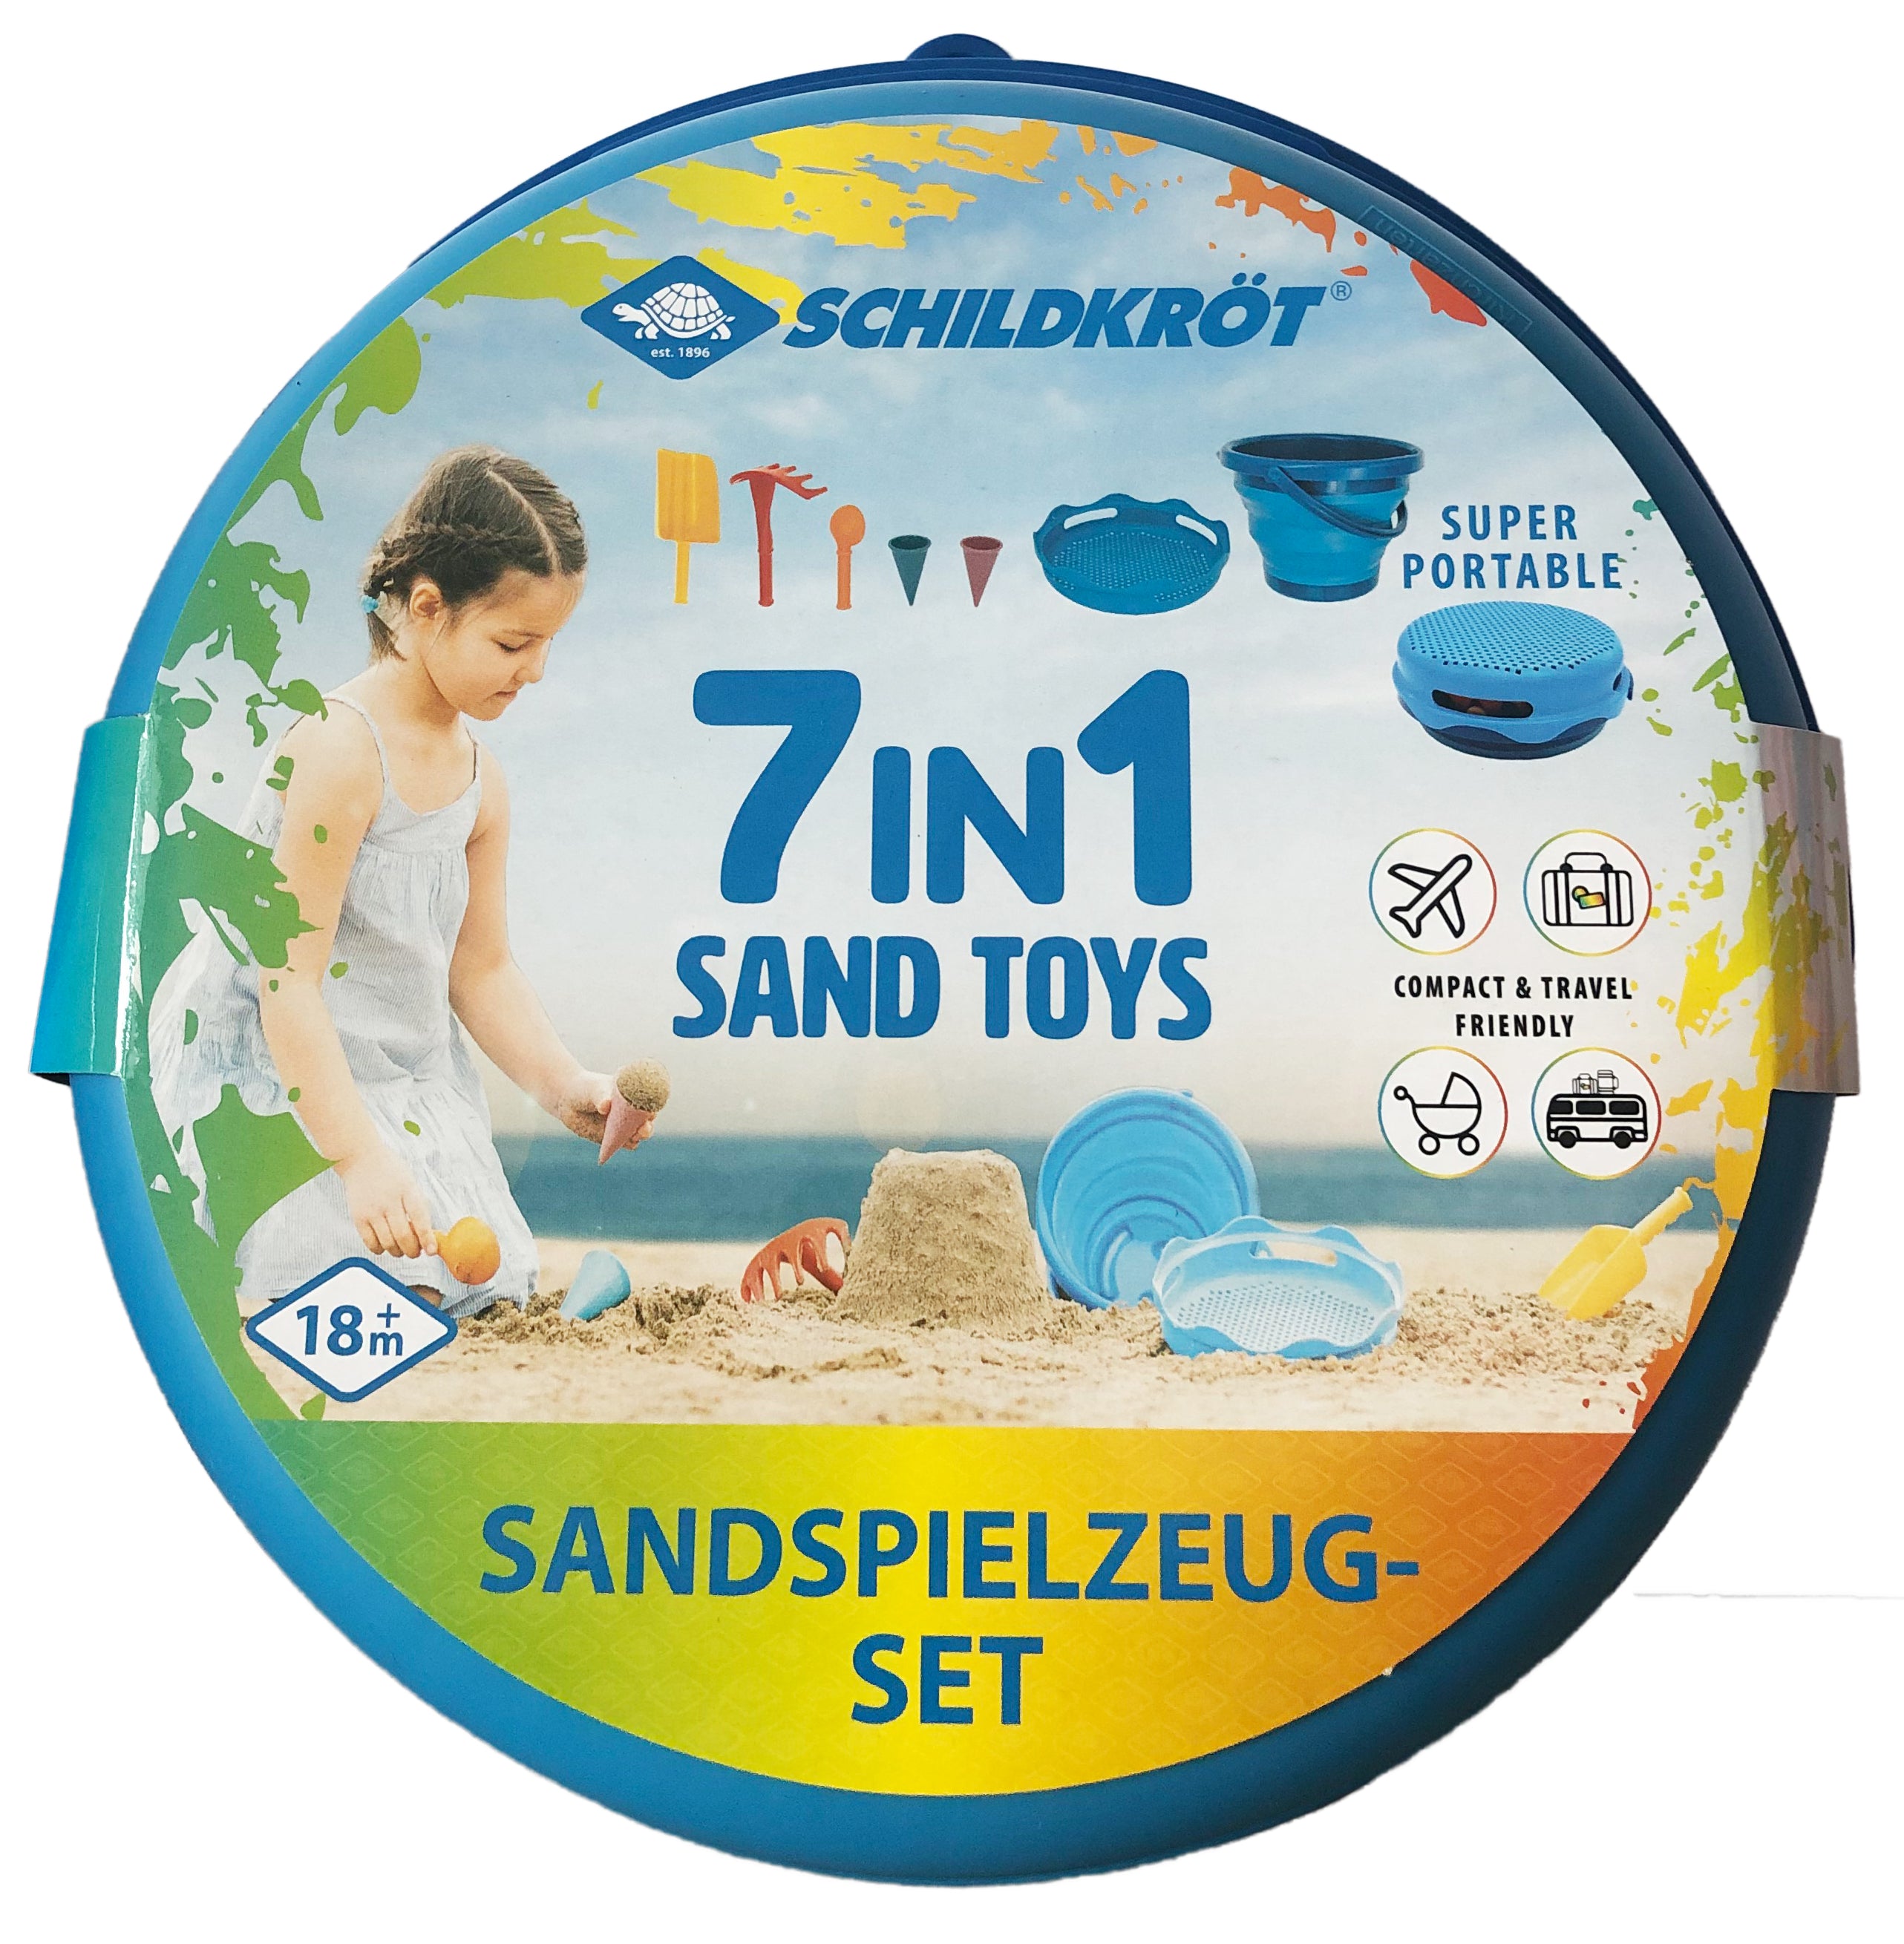 7in1 Sand Toys Falteimer Set